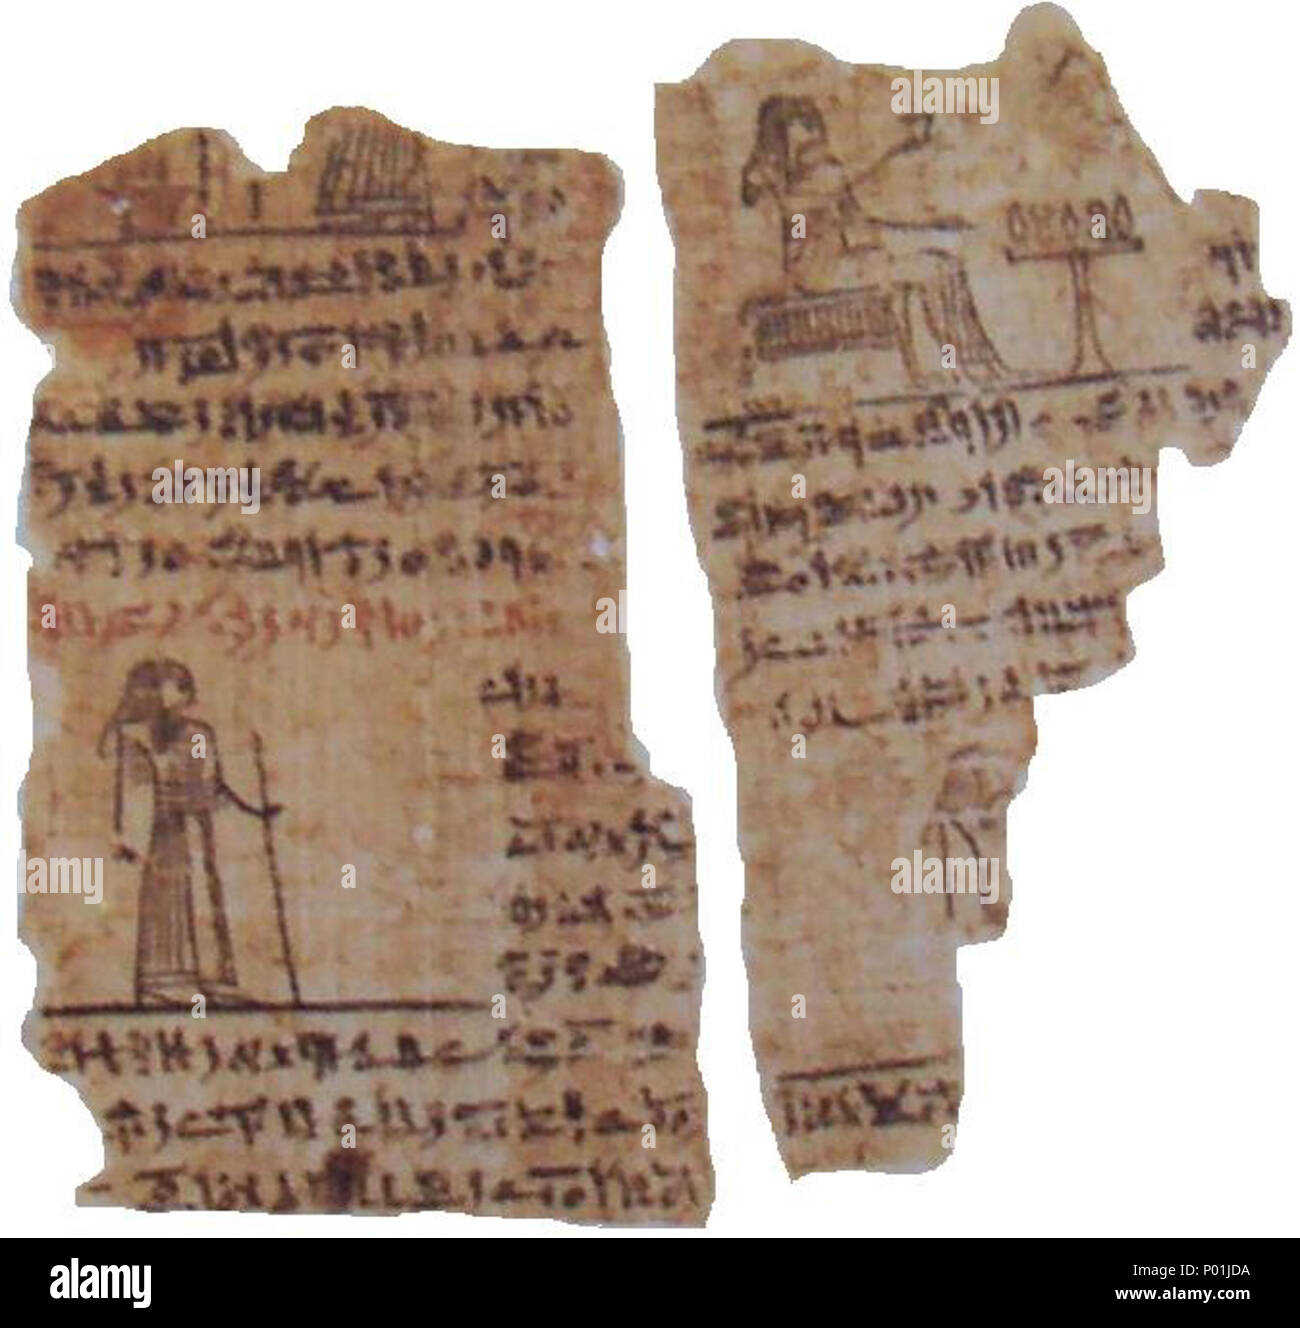 Papyrus - Wikipedia